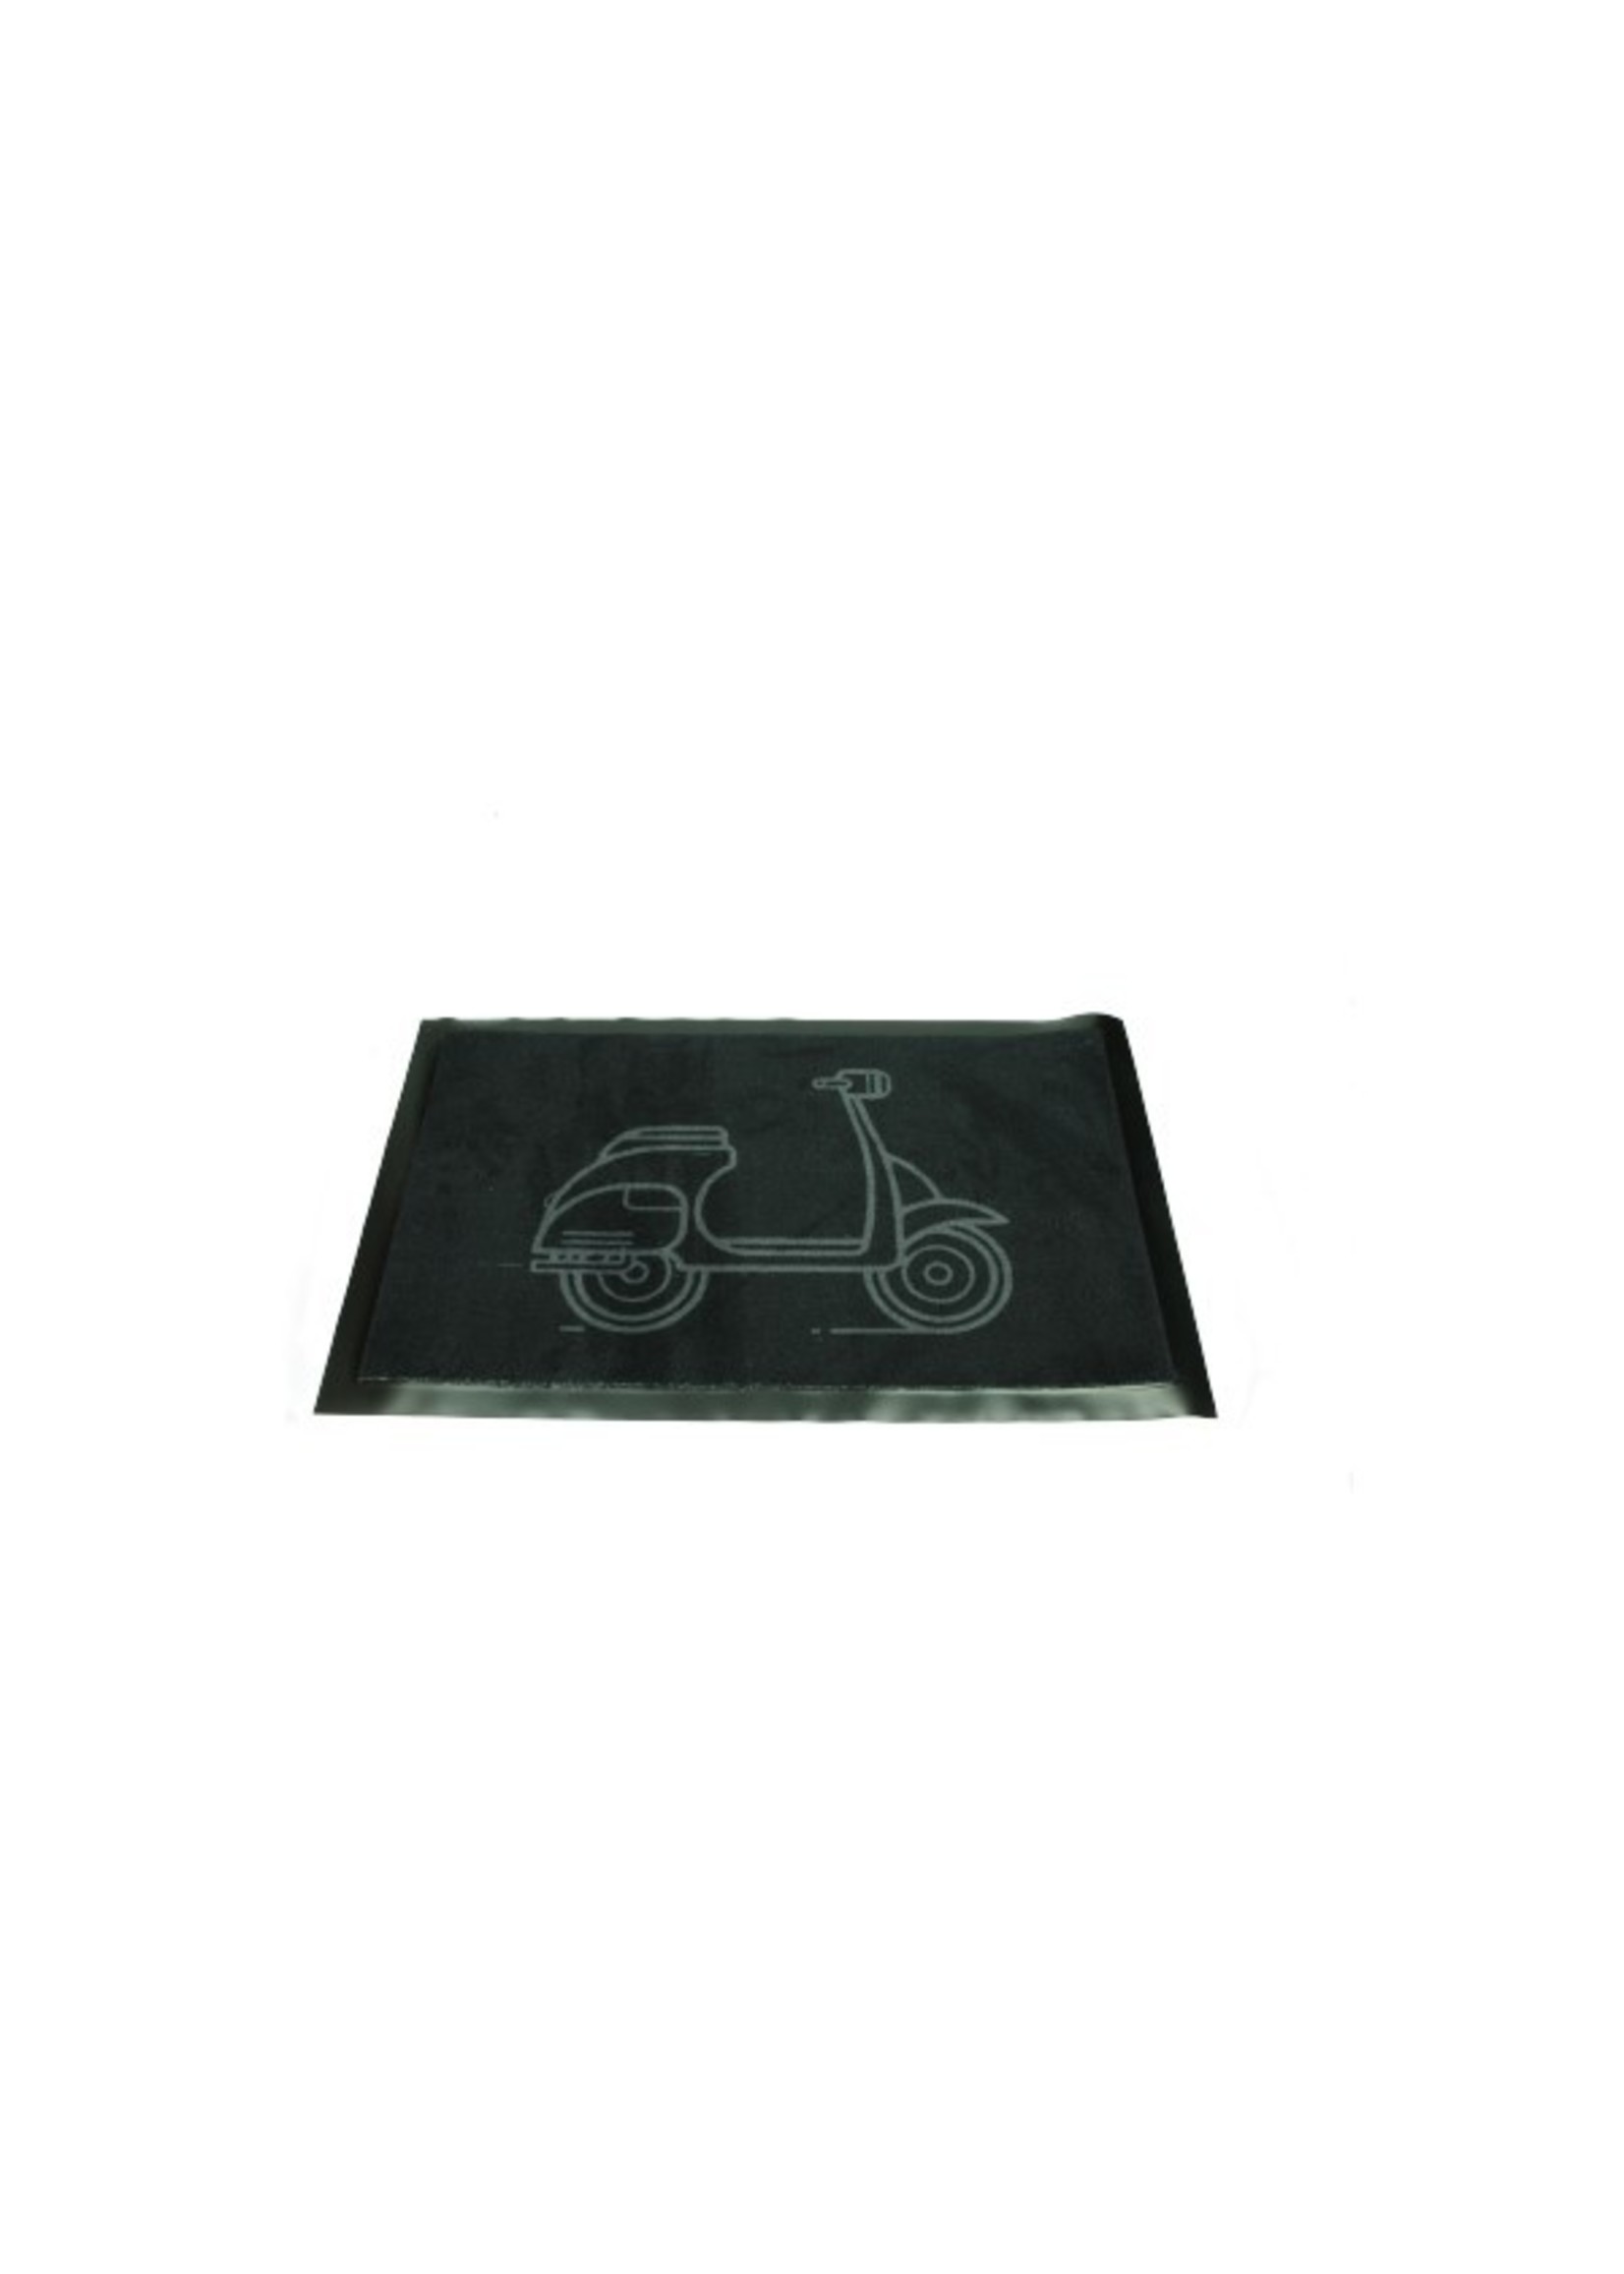 onderstandaard mat universeel 40x60cm (met scooter logo)